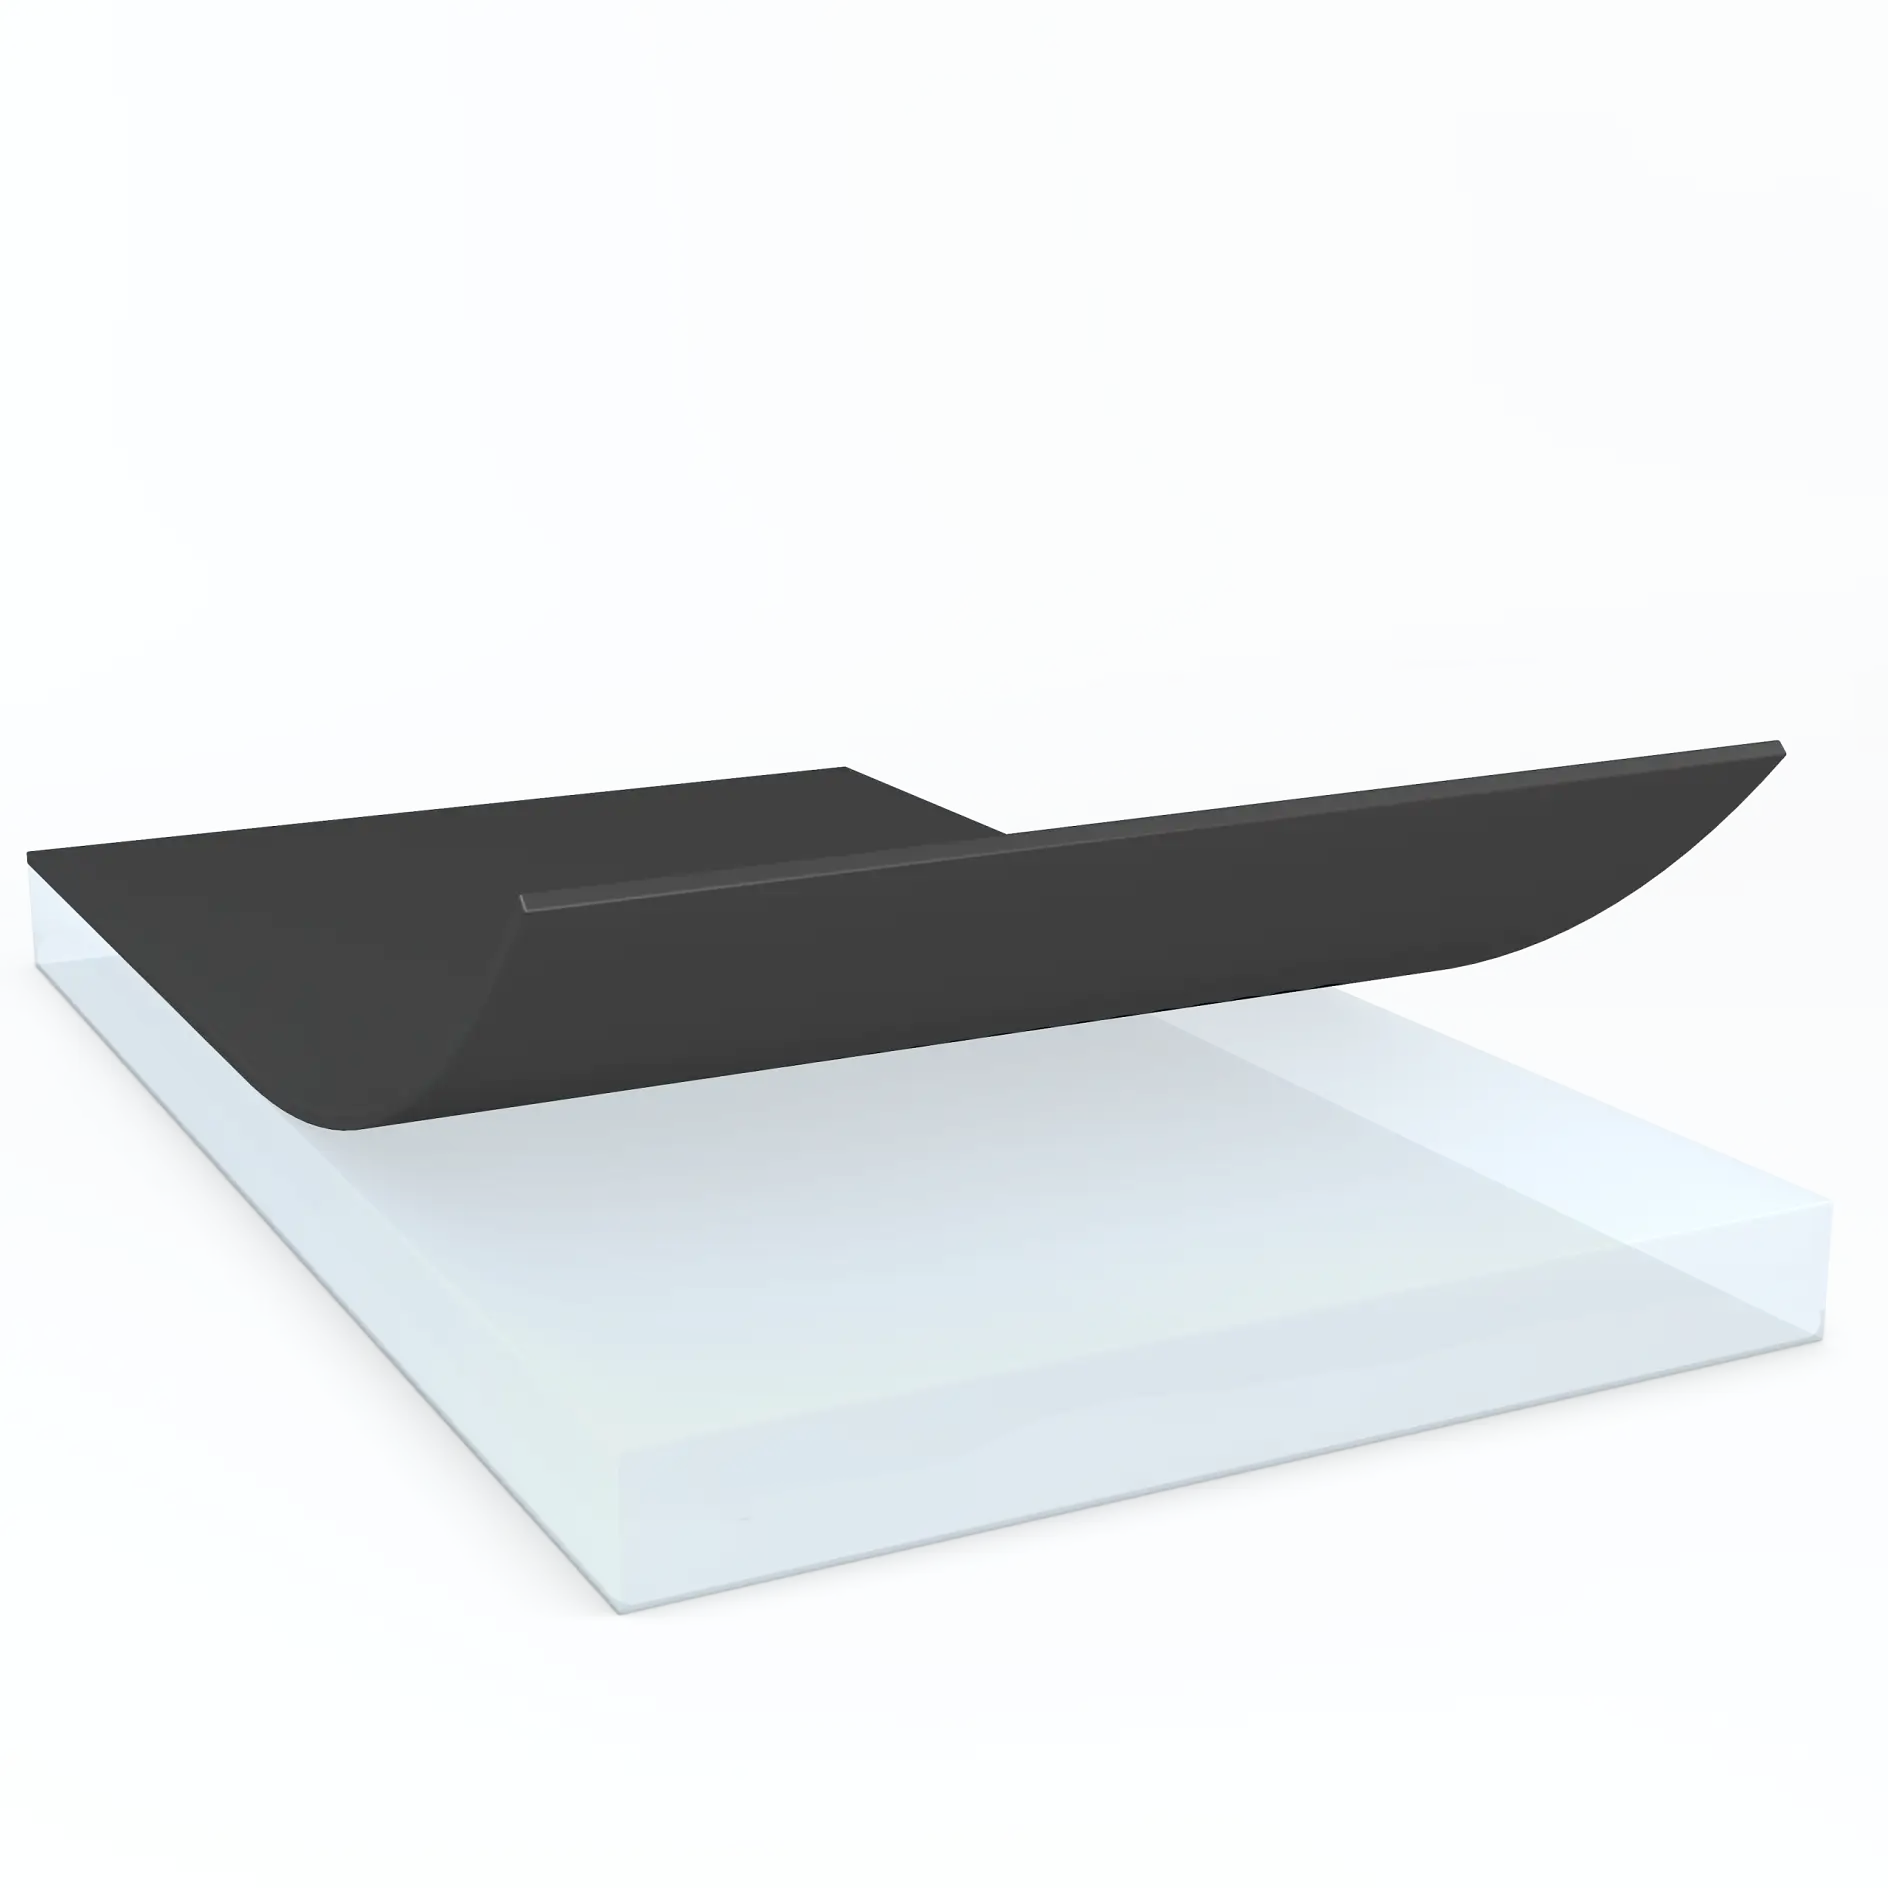 tesa-electronics-transparent-structural-bonding-solution-with-black-liner-illustration